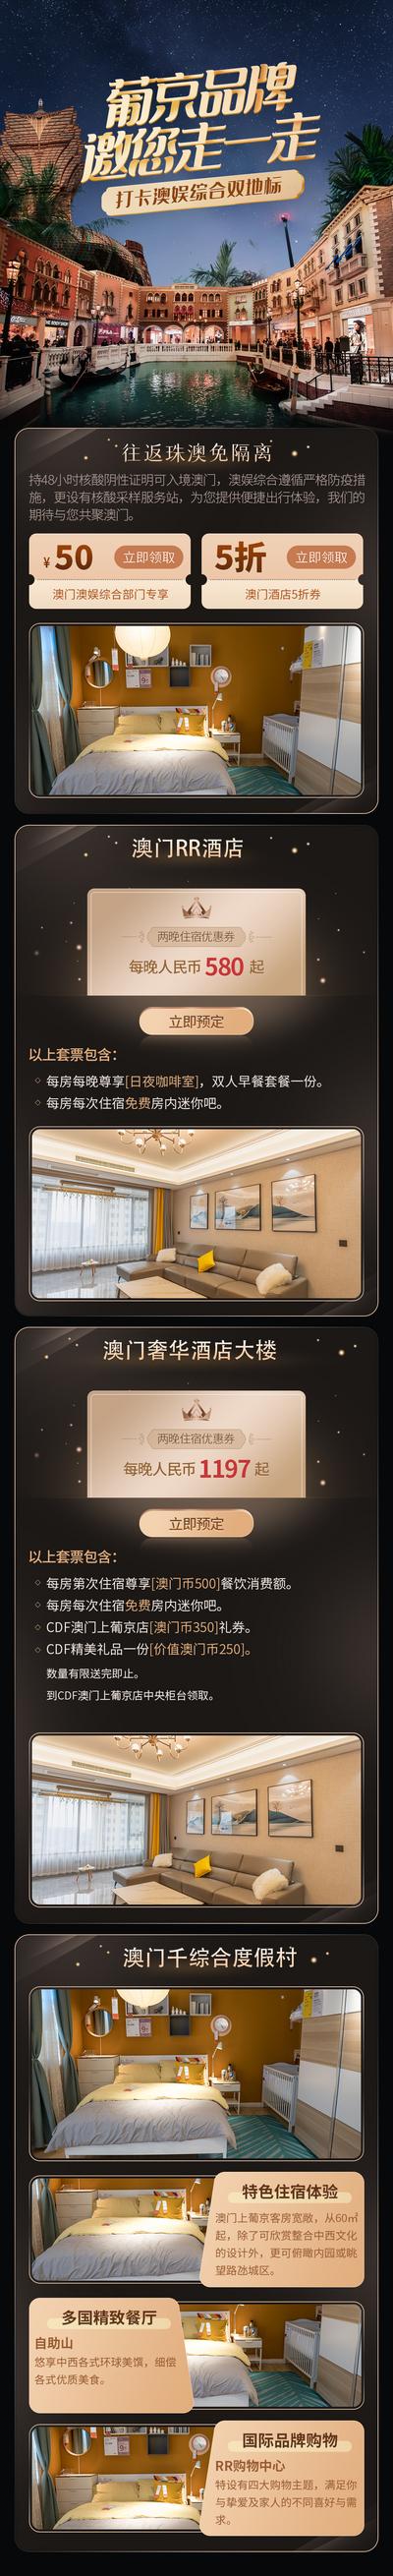 【南门网】广告 海报 促销 酒店 澳门 长图 专题